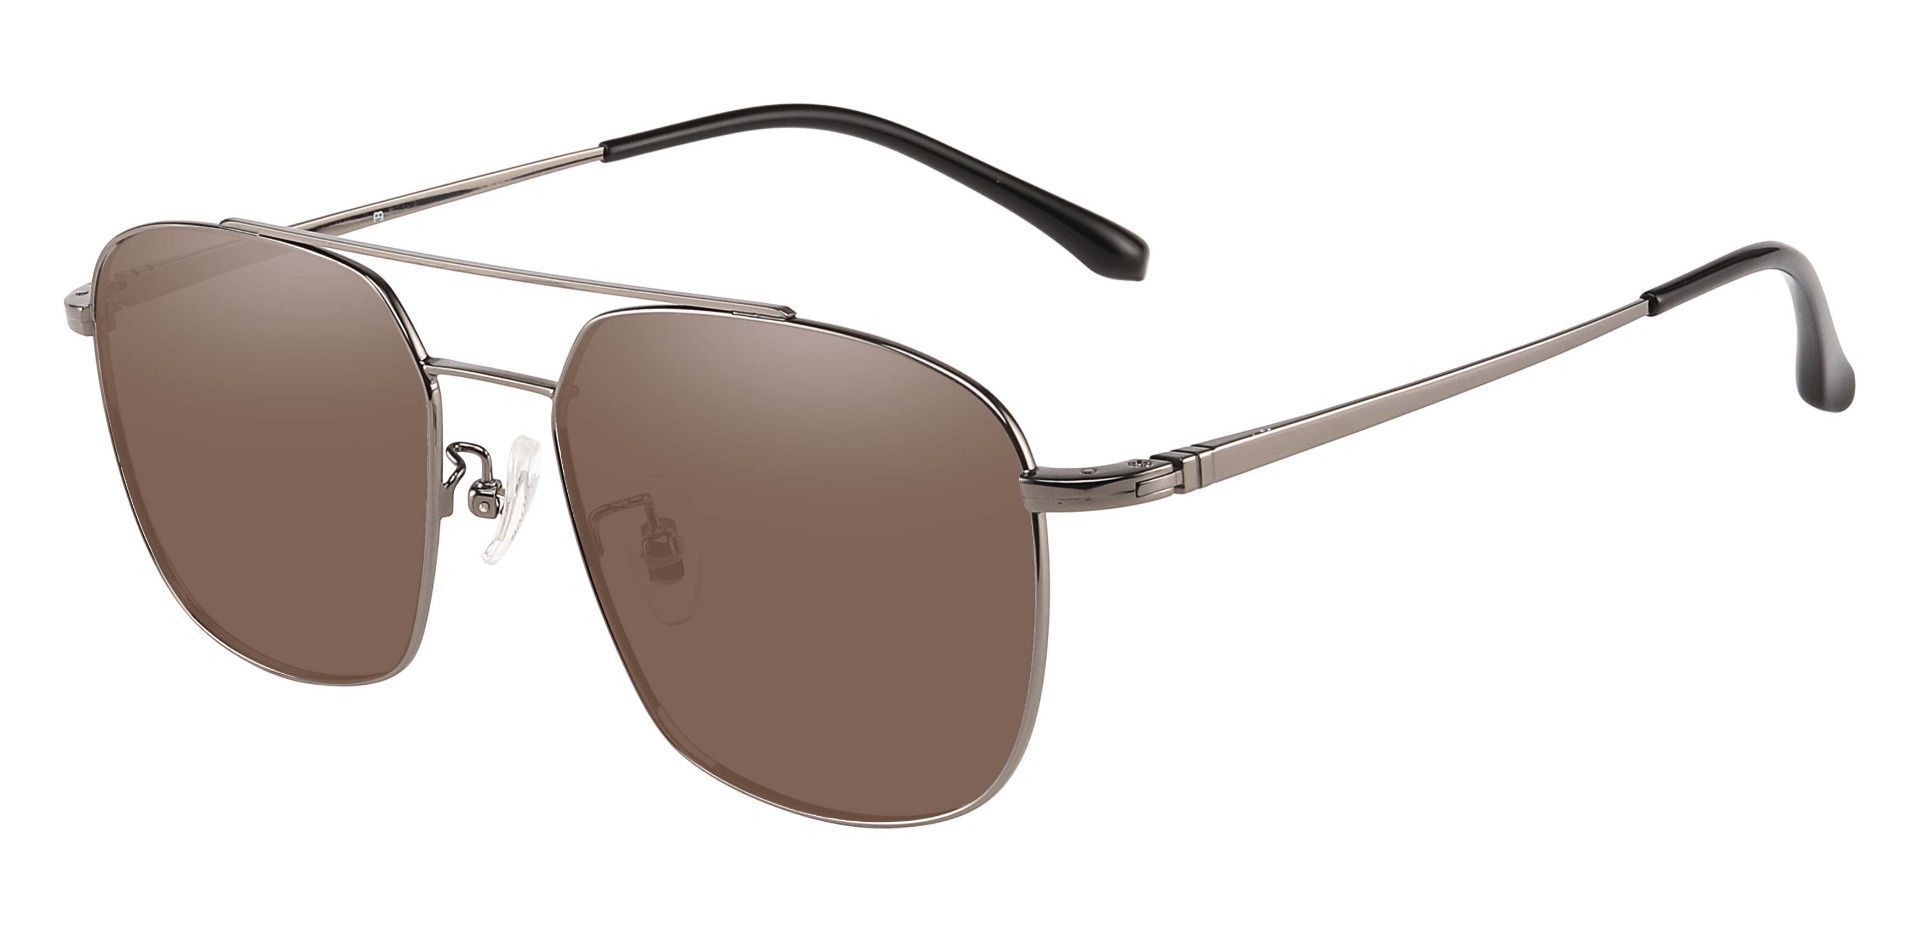 Trevor Aviator Progressive Sunglasses - Gray Frame With Brown Lenses